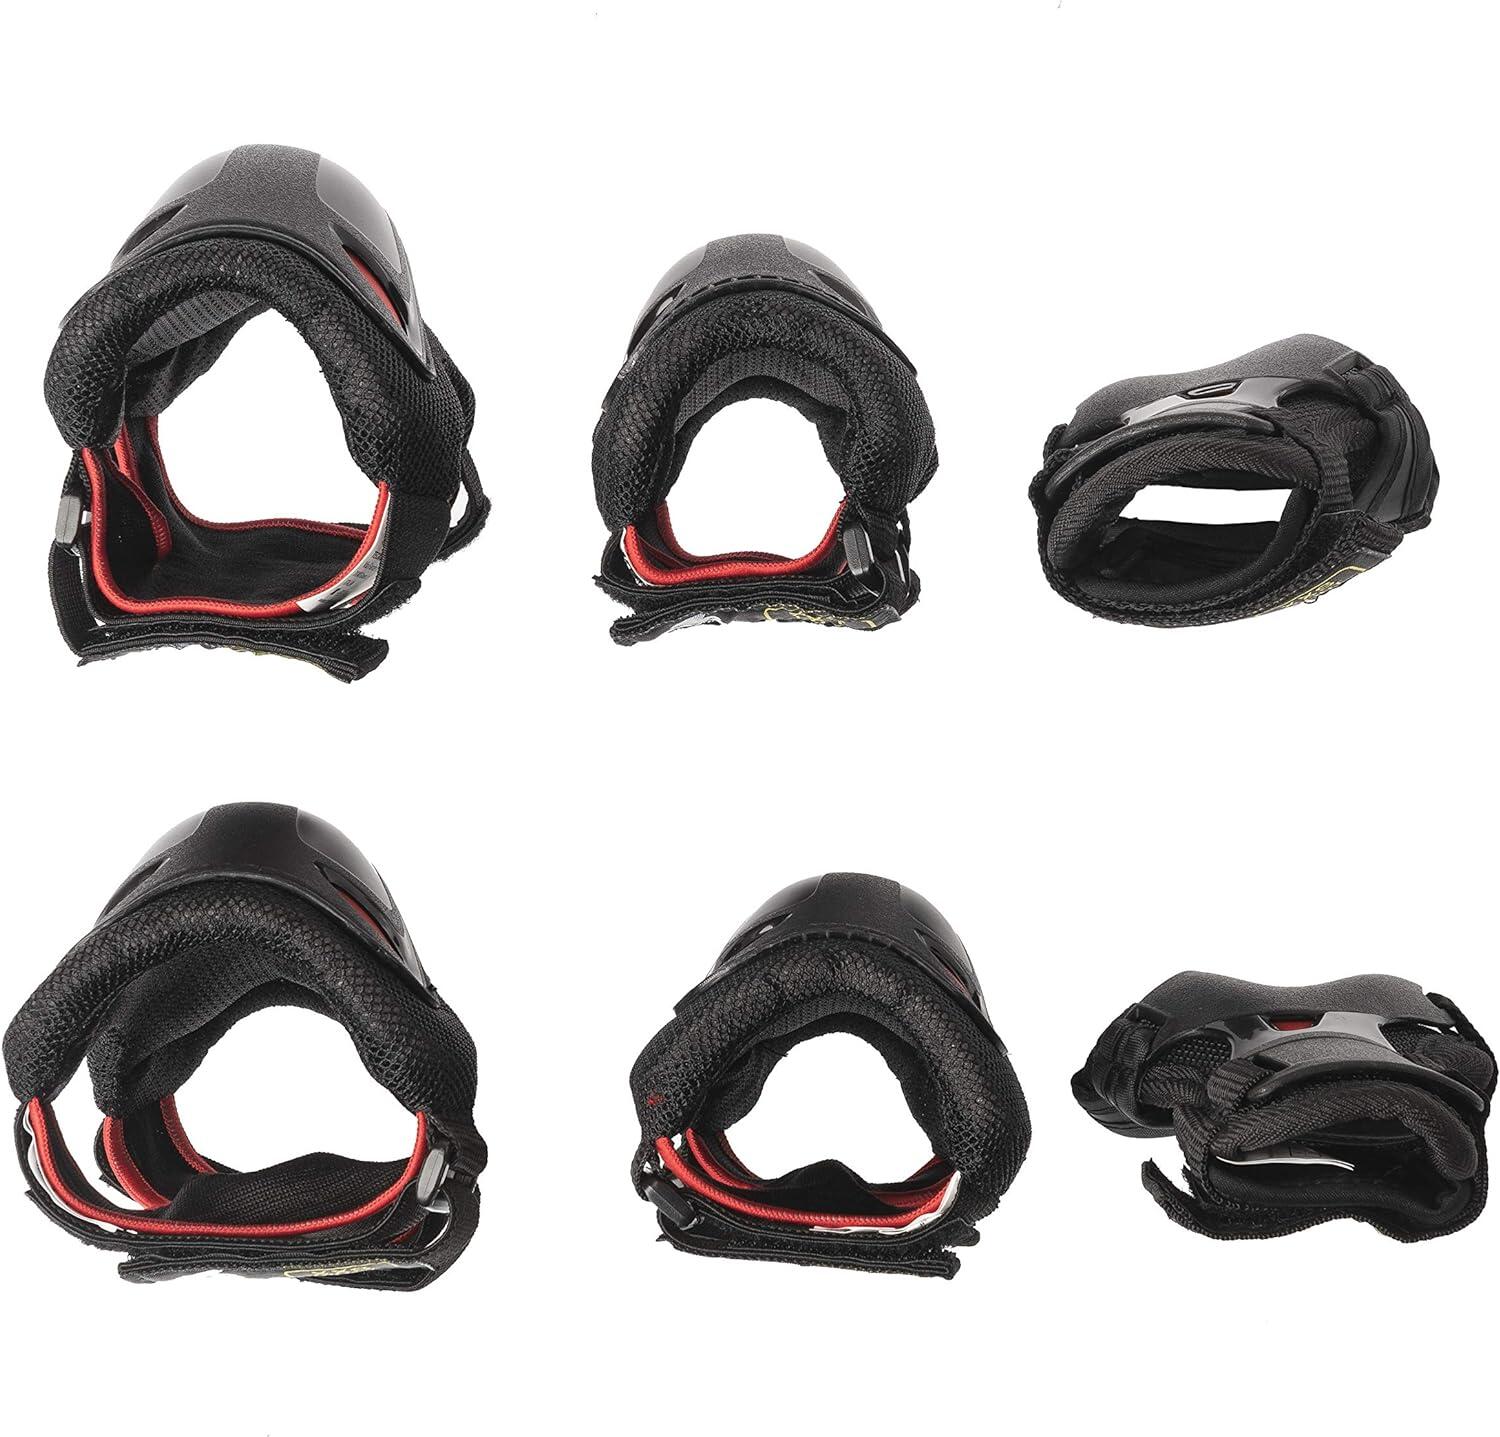 Skate Gear Jnr 3 Pack - Black/Red 3/3